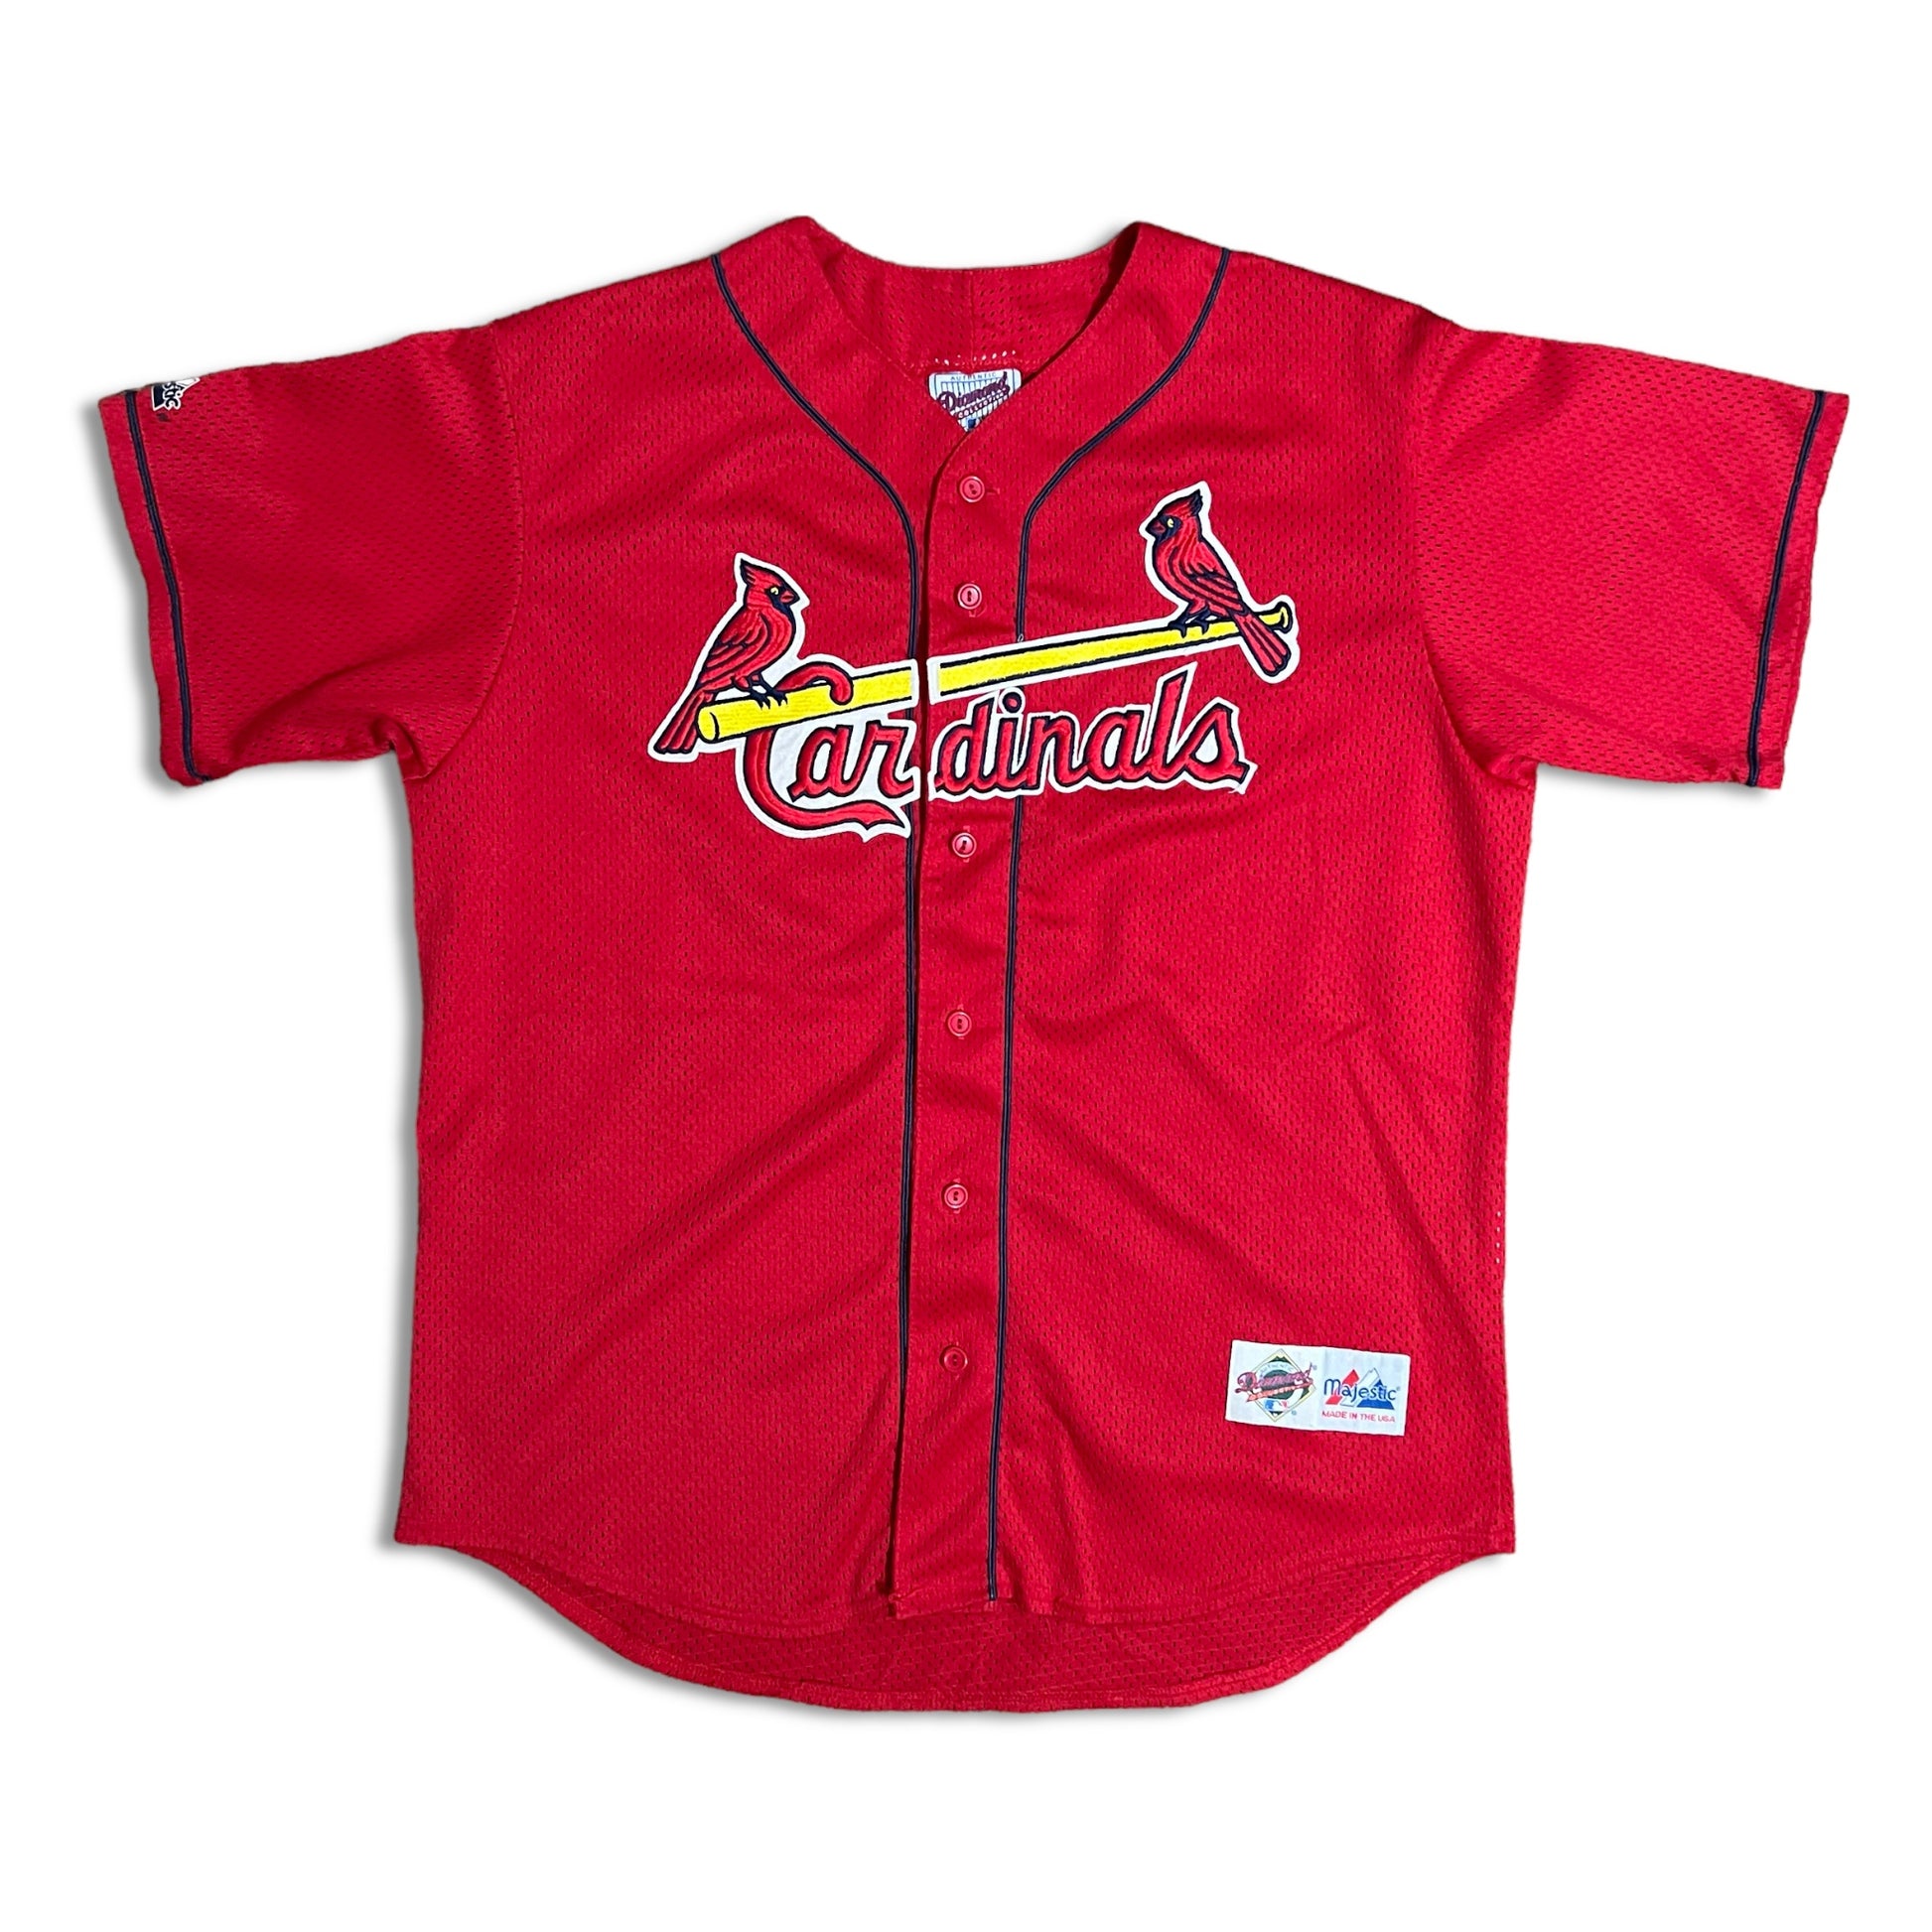 Vintage St. Louis Cardinals Sweatshirt L 